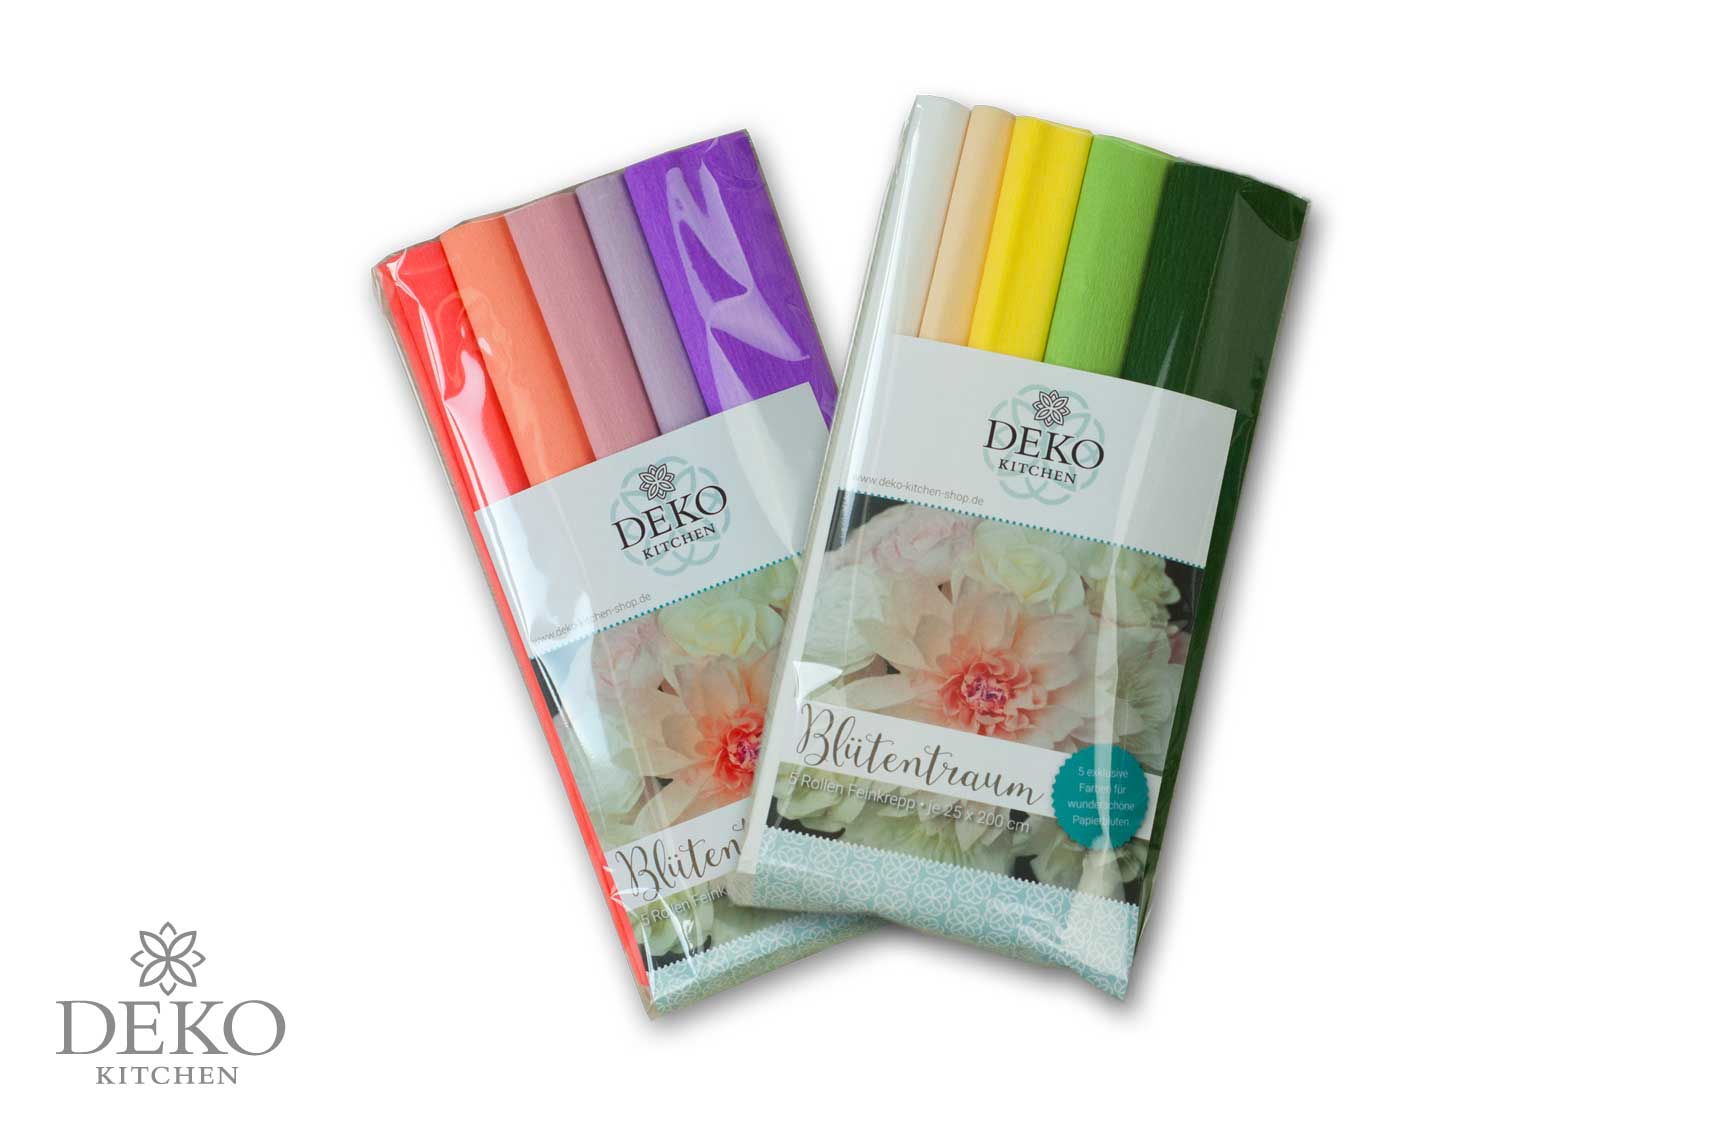 Deko kitchen papierblumen - Alle Auswahl unter den verglichenenDeko kitchen papierblumen